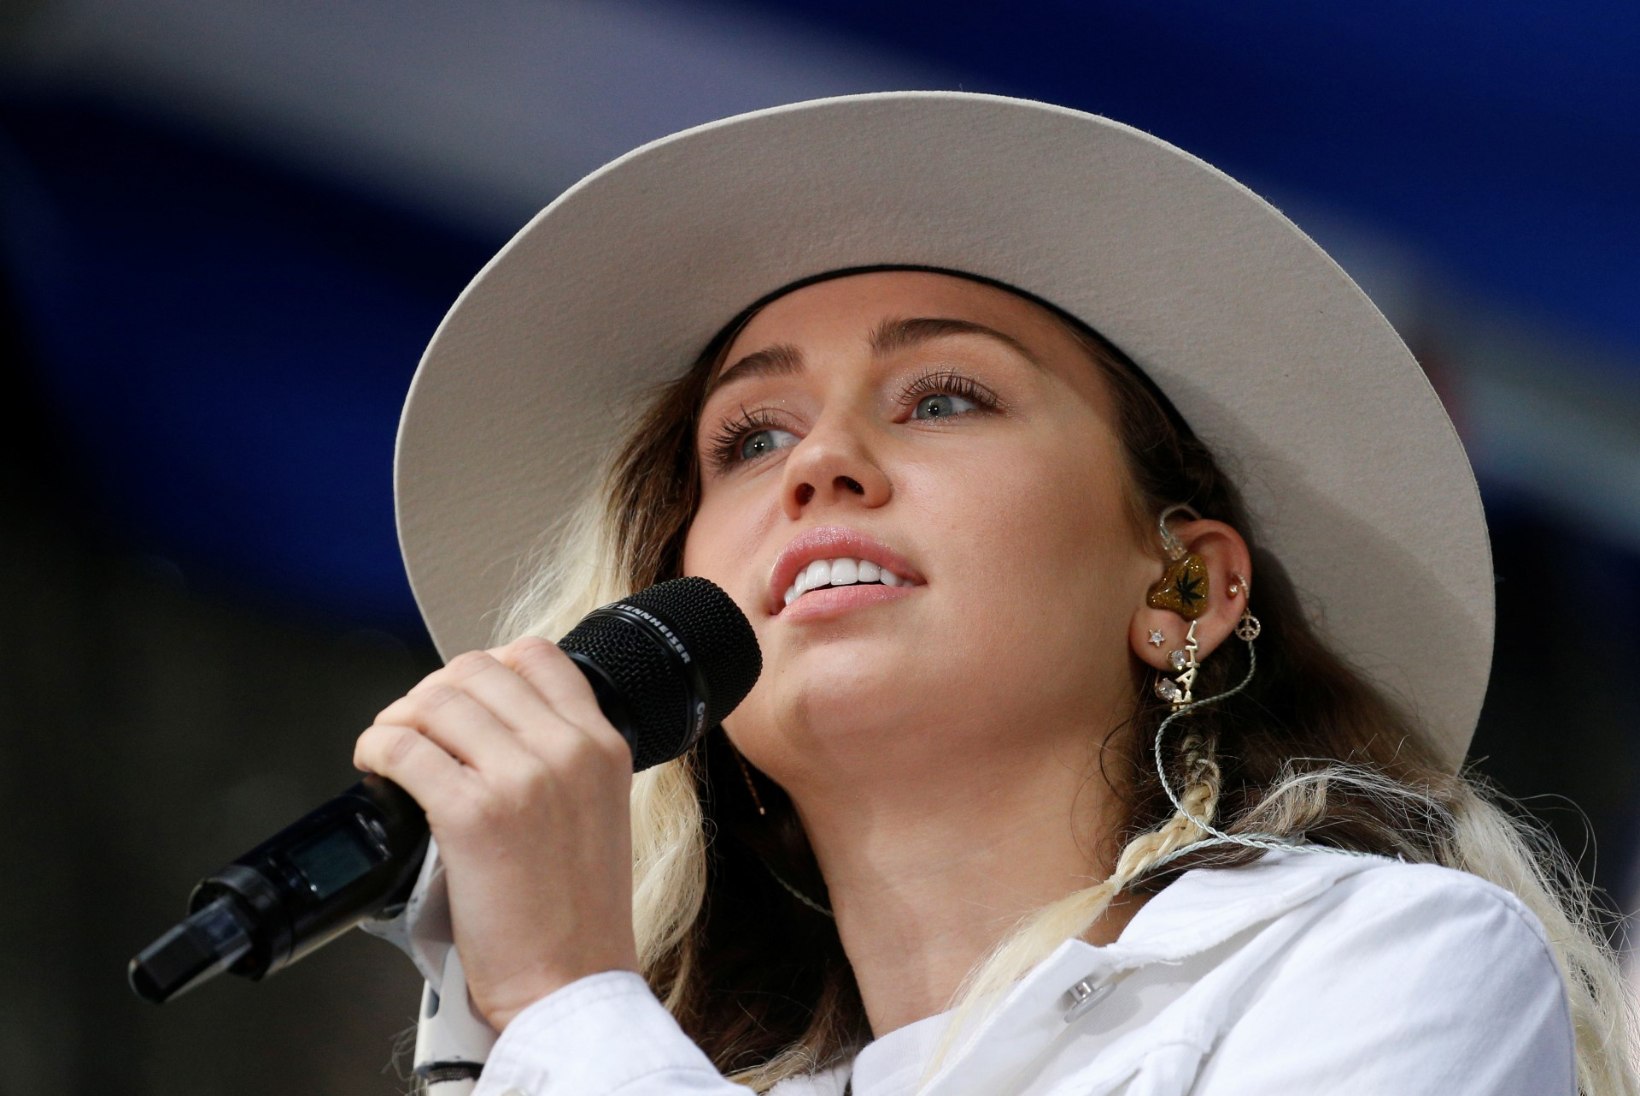 ÄGE VIDEO | Miley Cyrus ja Jimmy Fallon metroos tänavamuusikutena!